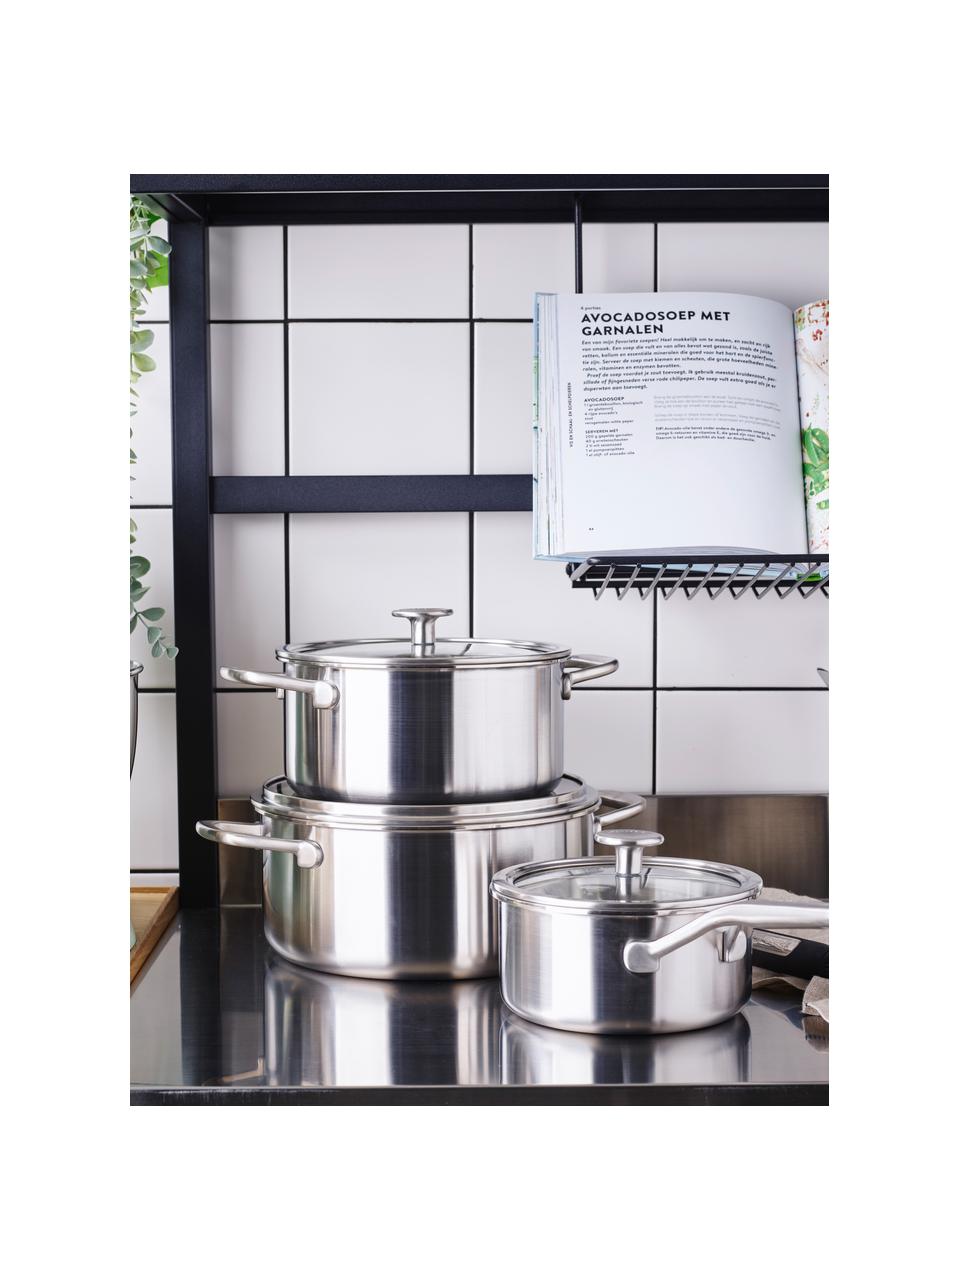 Kookset KitchenAid met 3 lagen, 7-delig, Deksel: glas, Zilverkleurig, 7-delige set met verschillende formaten